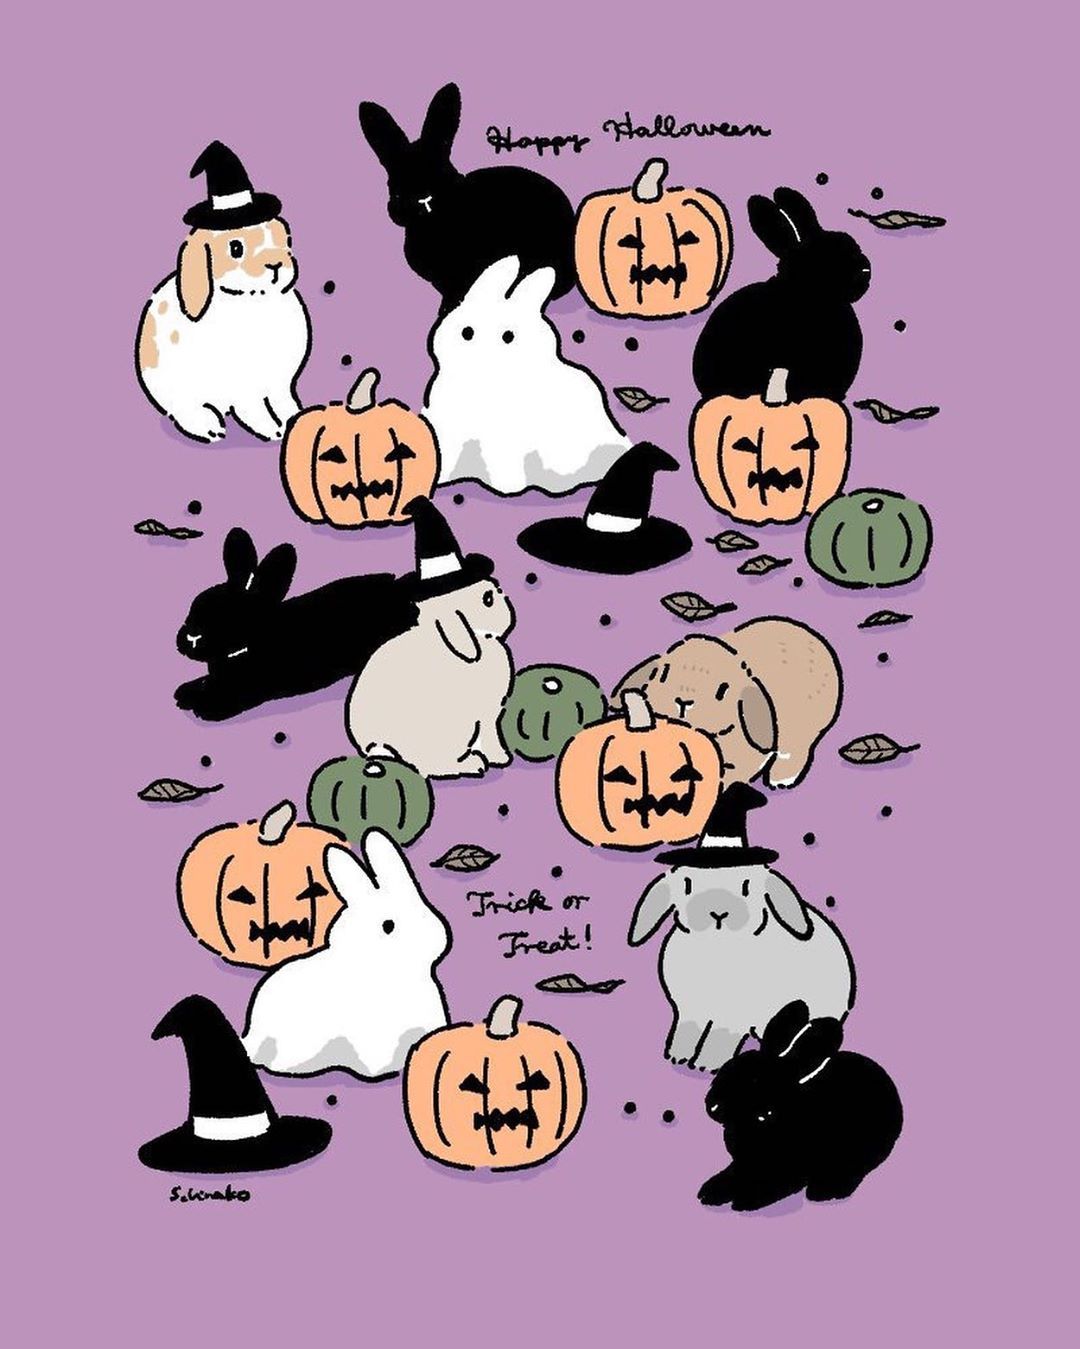 森山標子/Schinako on Instagram: “Day 21 #Halloween rabbits #ハロウィン のうさぎさんたち #inktober #Inktober2019 * #illustration#art#draw. Bunny art, Bunny artwork, Bunny wallpaper